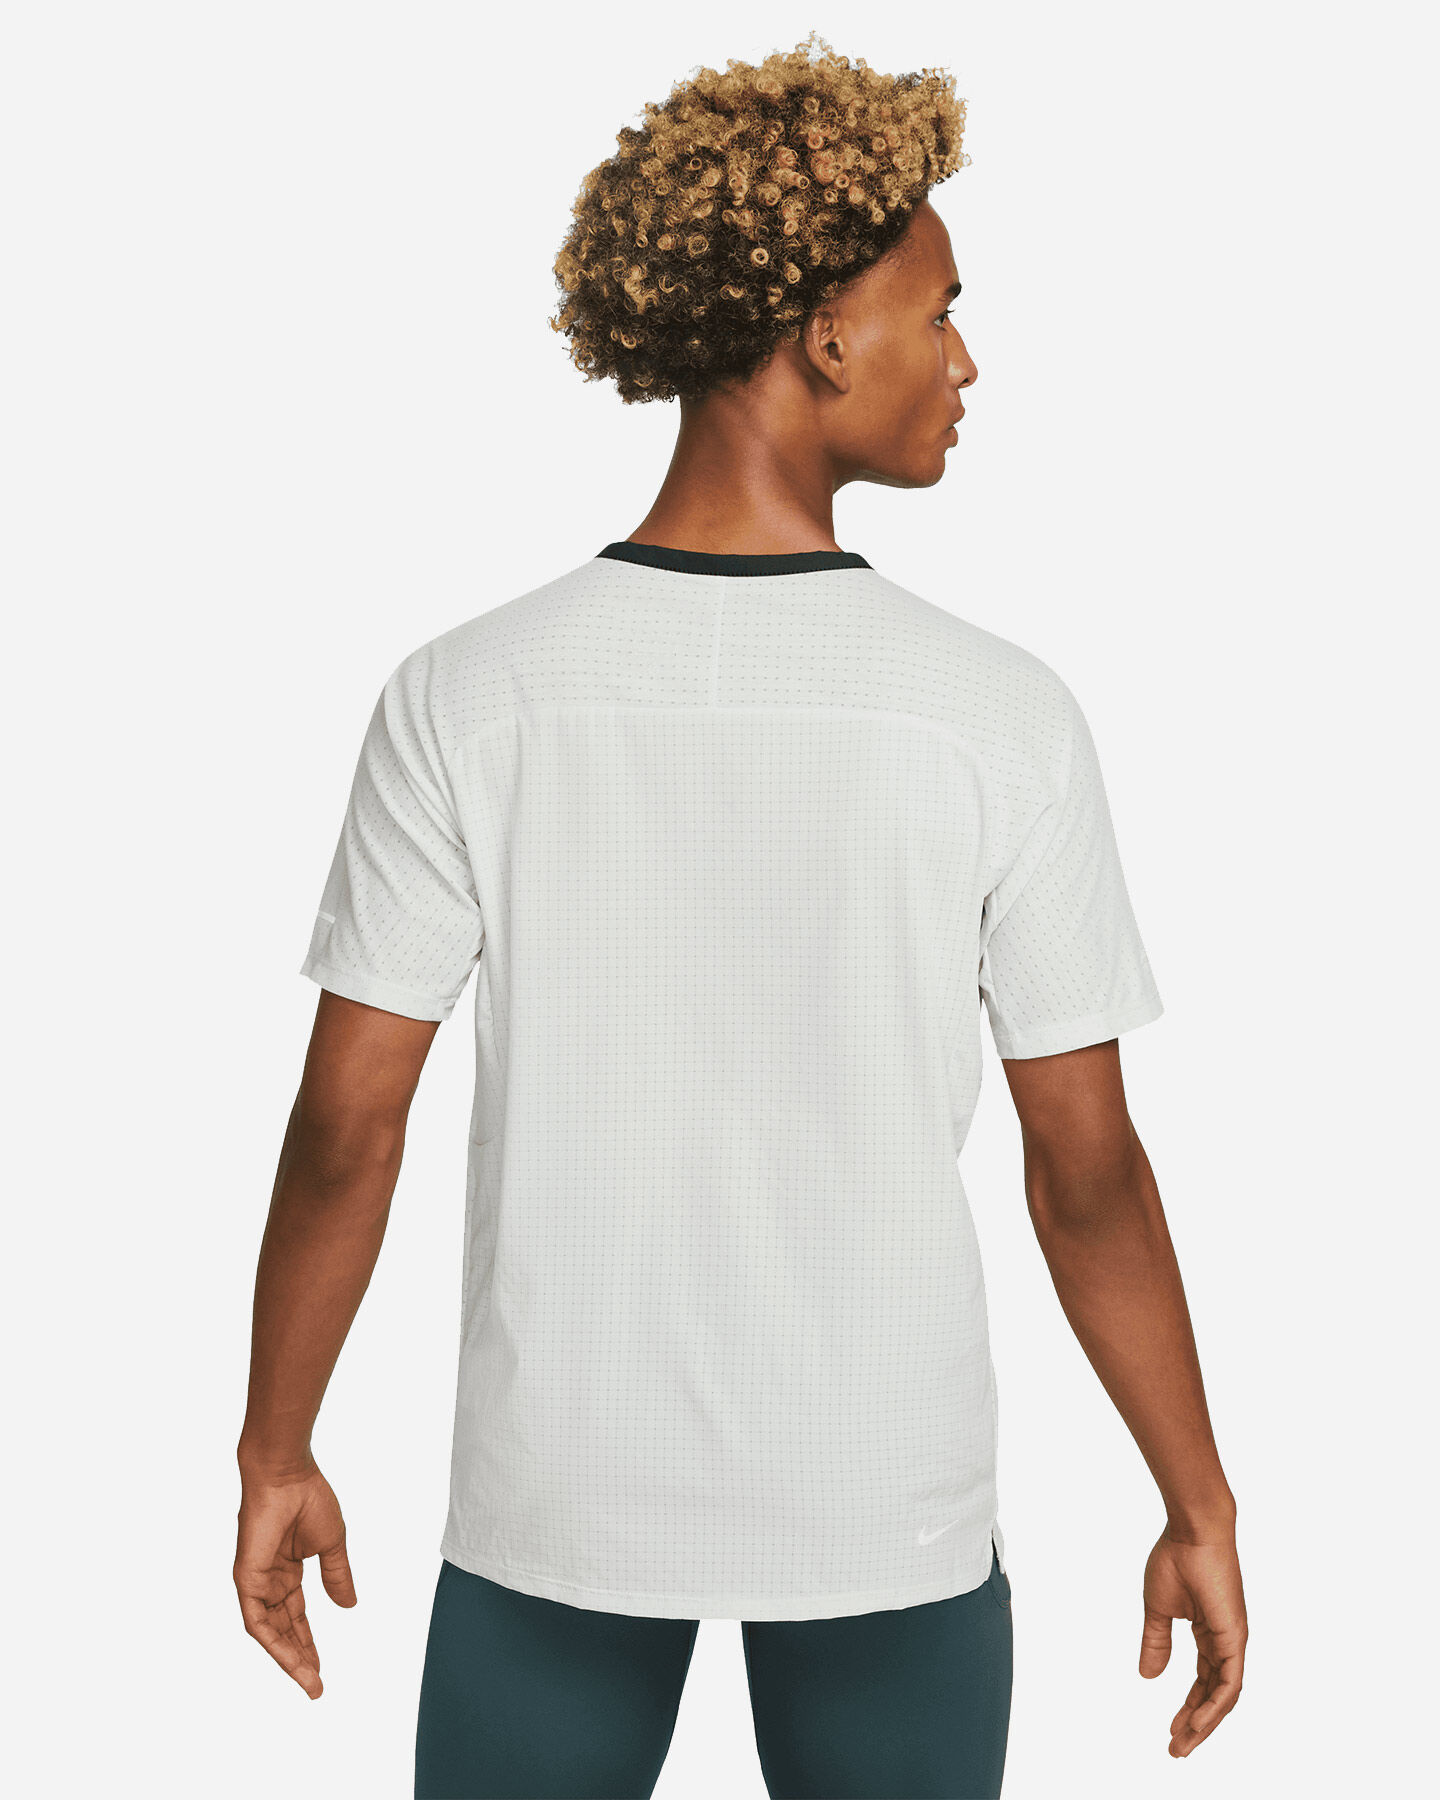  T-Shirt running NIKE DRI FIT TRAIL M S5538568|034|XL scatto 1